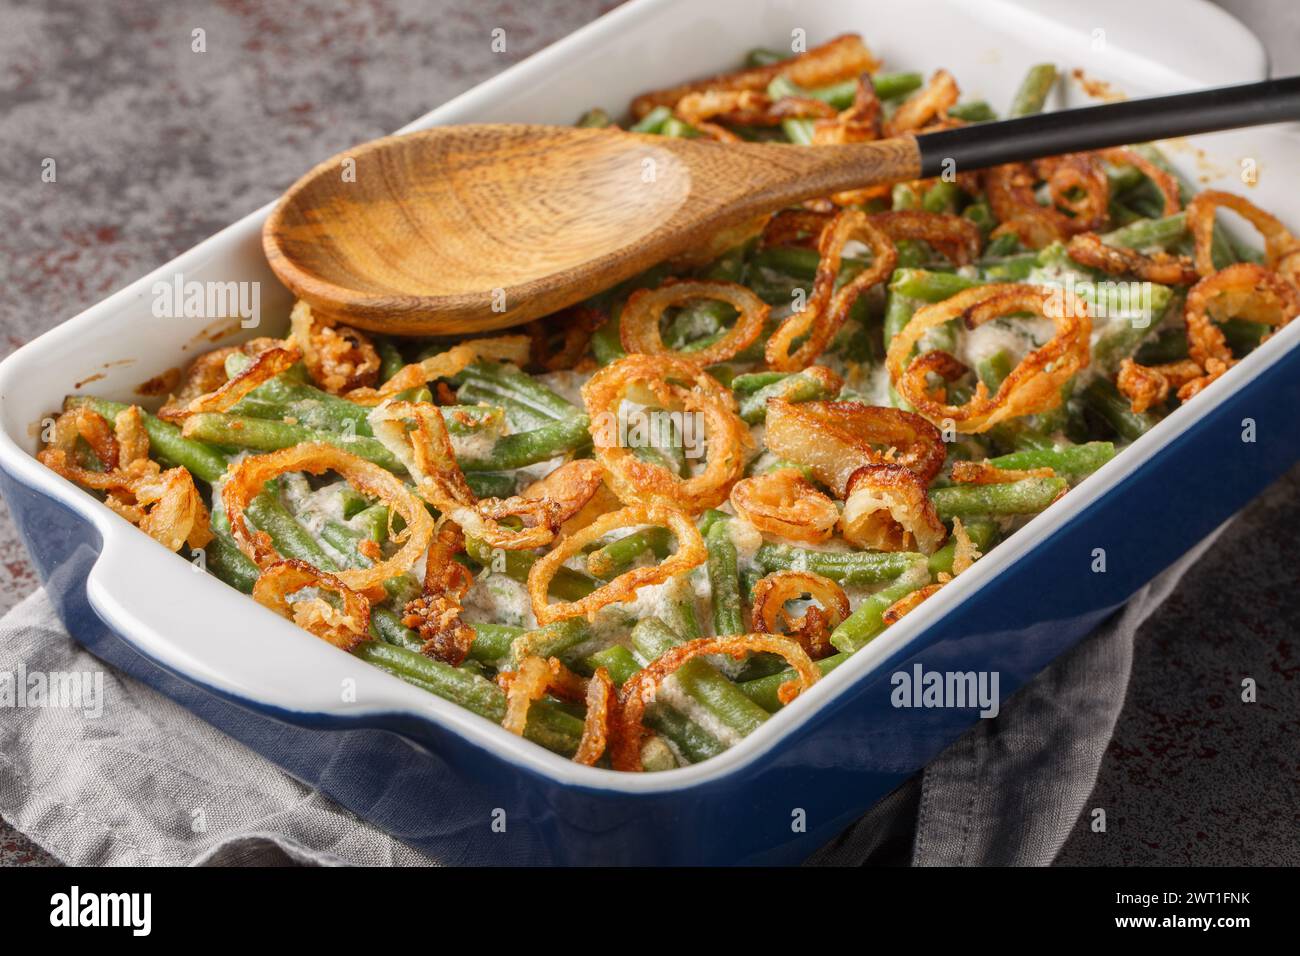 Délicieuse casserole de haricots verts crémeuse saupoudrée d'oignons frits croustillants sur le plat de cuisson sur la table. Horizontal Banque D'Images